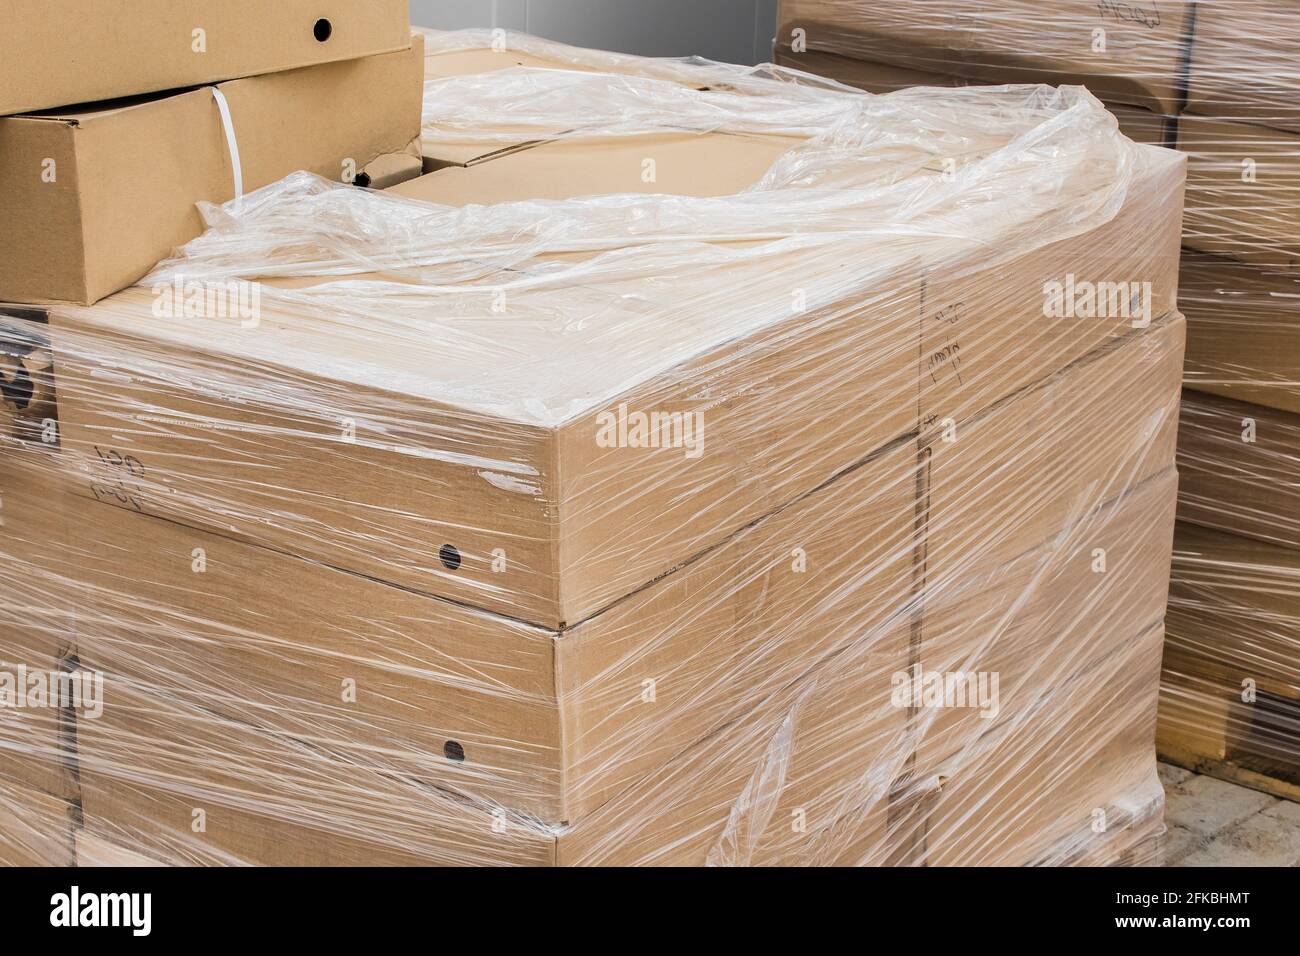 Un mazzetto di scatole di cartone con materiali da costruzione imballati in involucro di plastica nel cantiere. Foto Stock